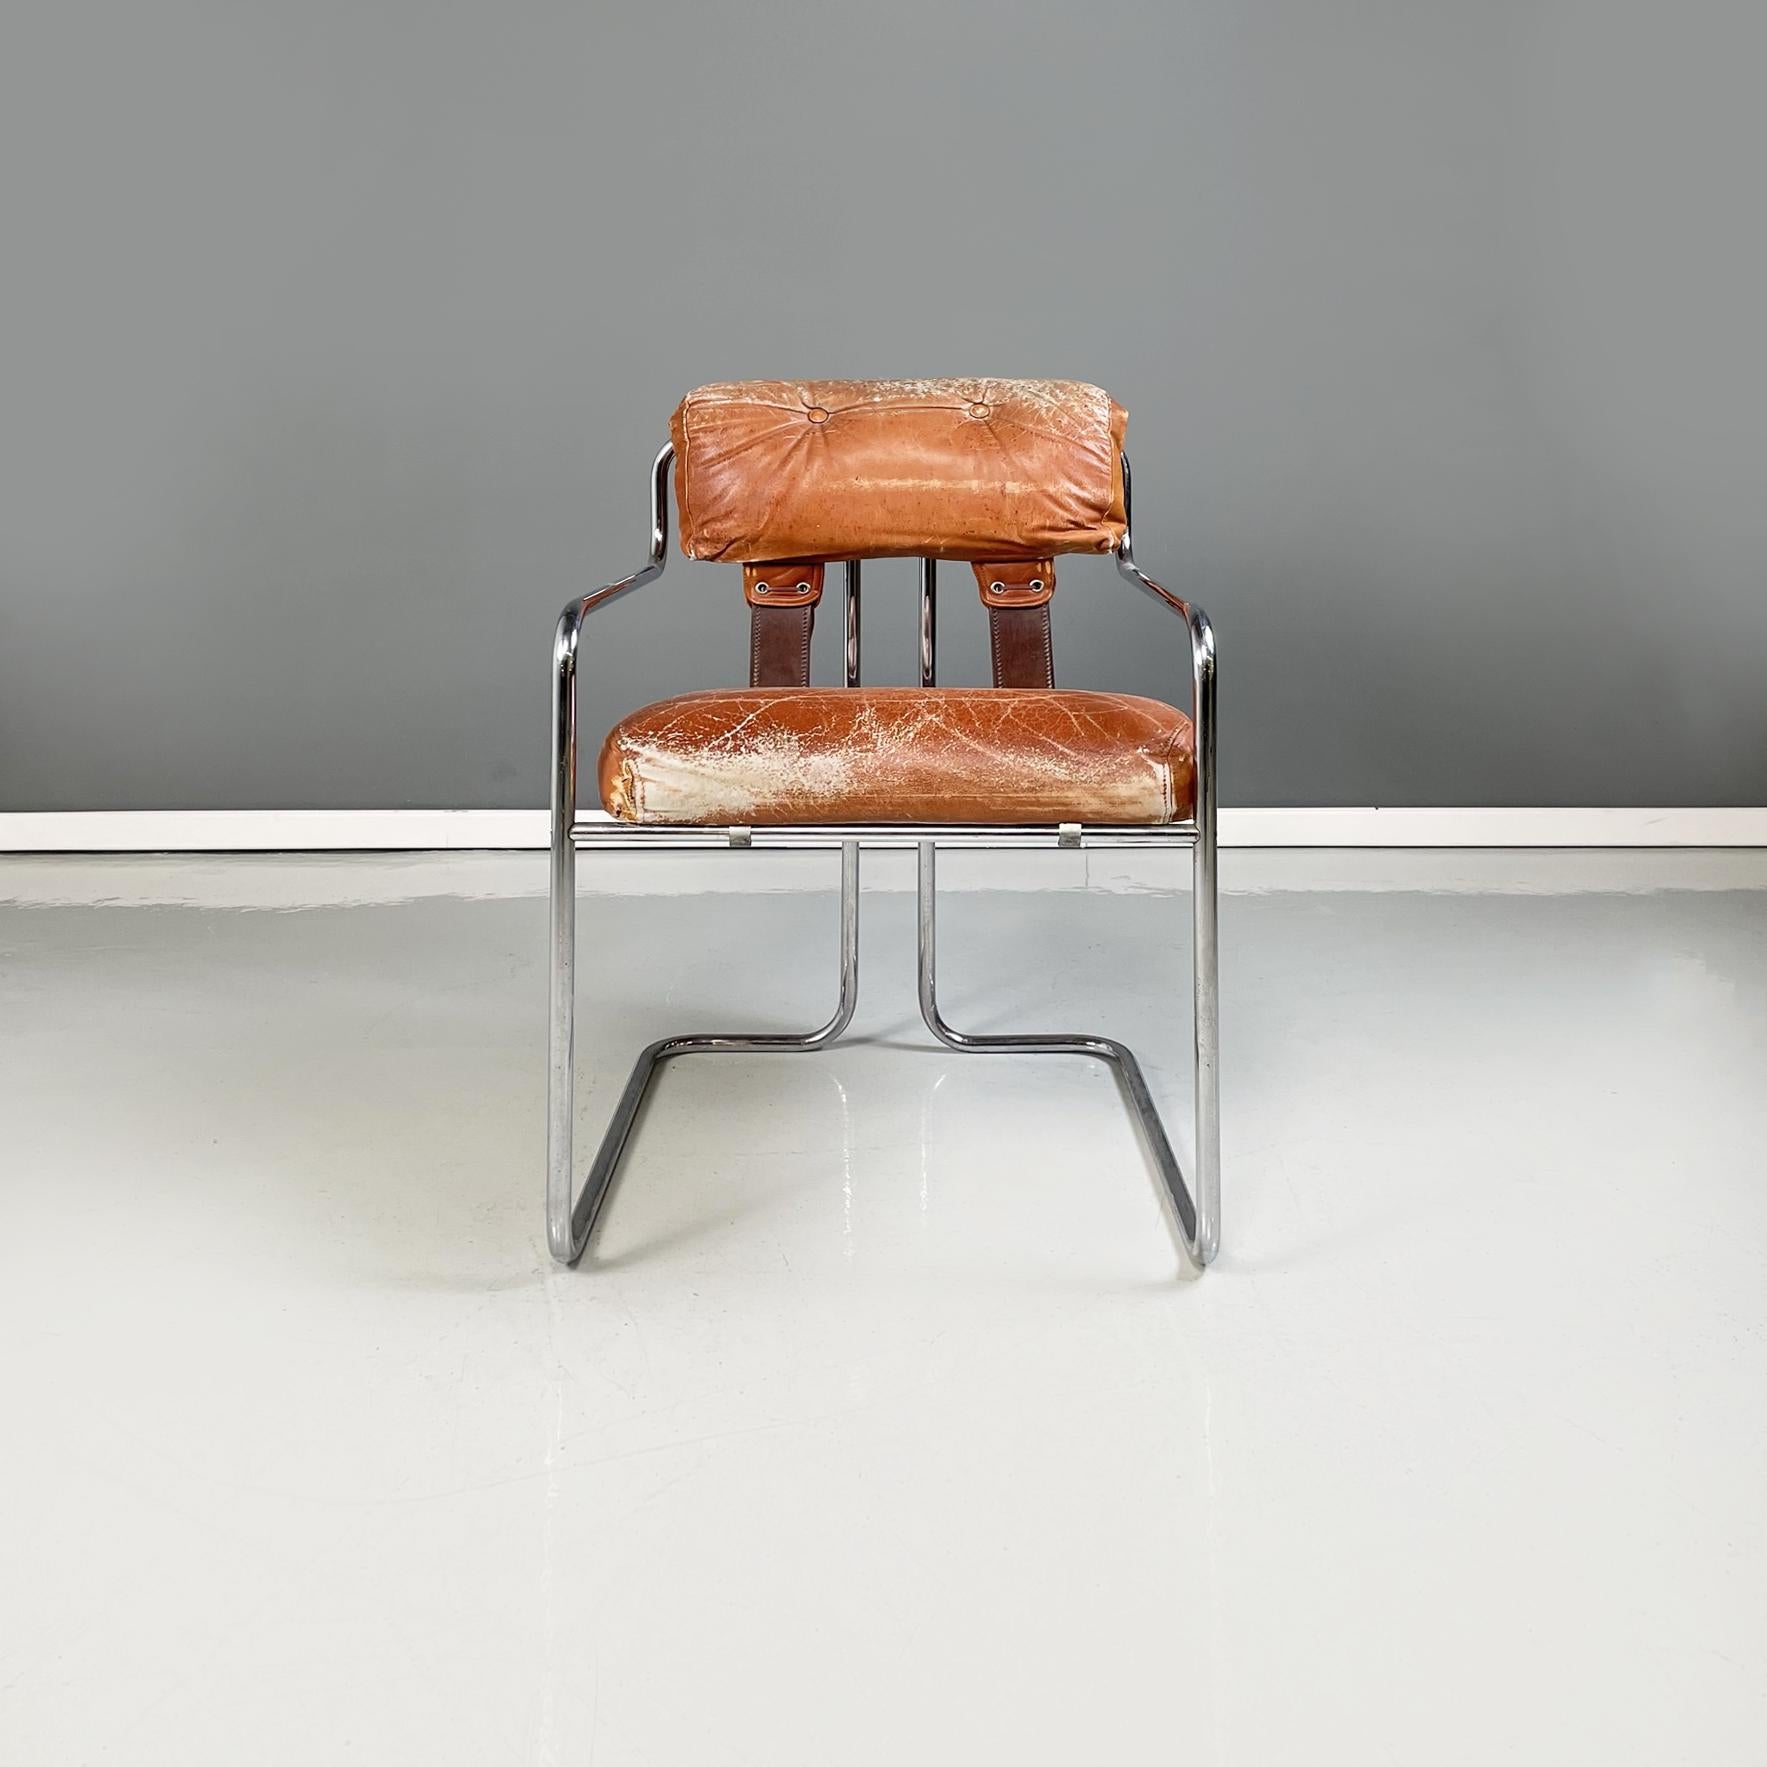 Chaise moderne italienne Tucroma en cuir et métal brun par Guido Faleschini pour 4Mariani, 1970
Chaise mod. Tucroma avec assise rembourrée en cuir brun. Le dossier est composé d'un coussin rembourré recouvert de cuir brun et de bandes de cuir. La